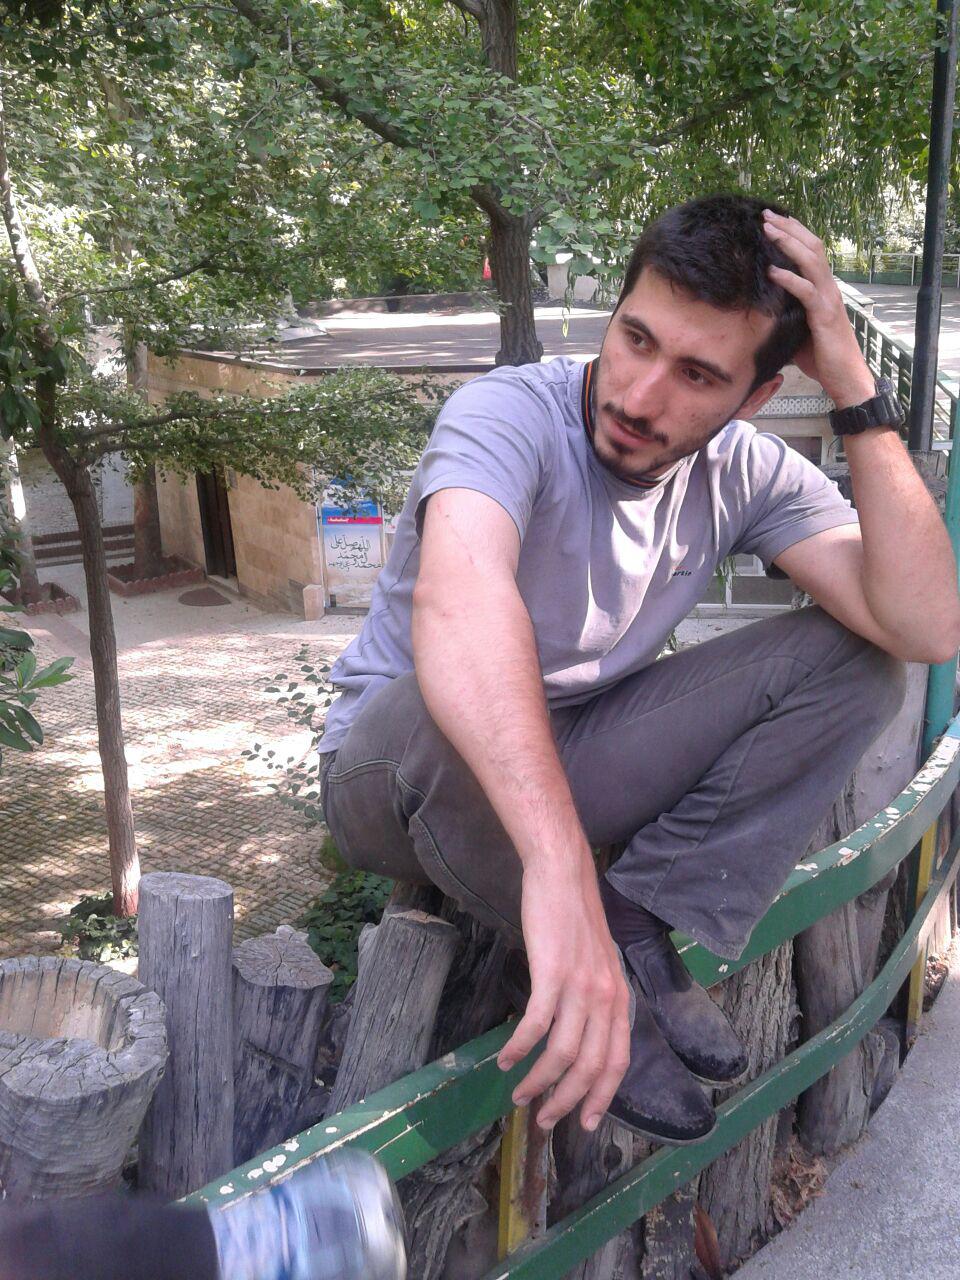 یادکردی از شهید مدافع حرمی که نامش پس از رحلت امام تغییر کرد